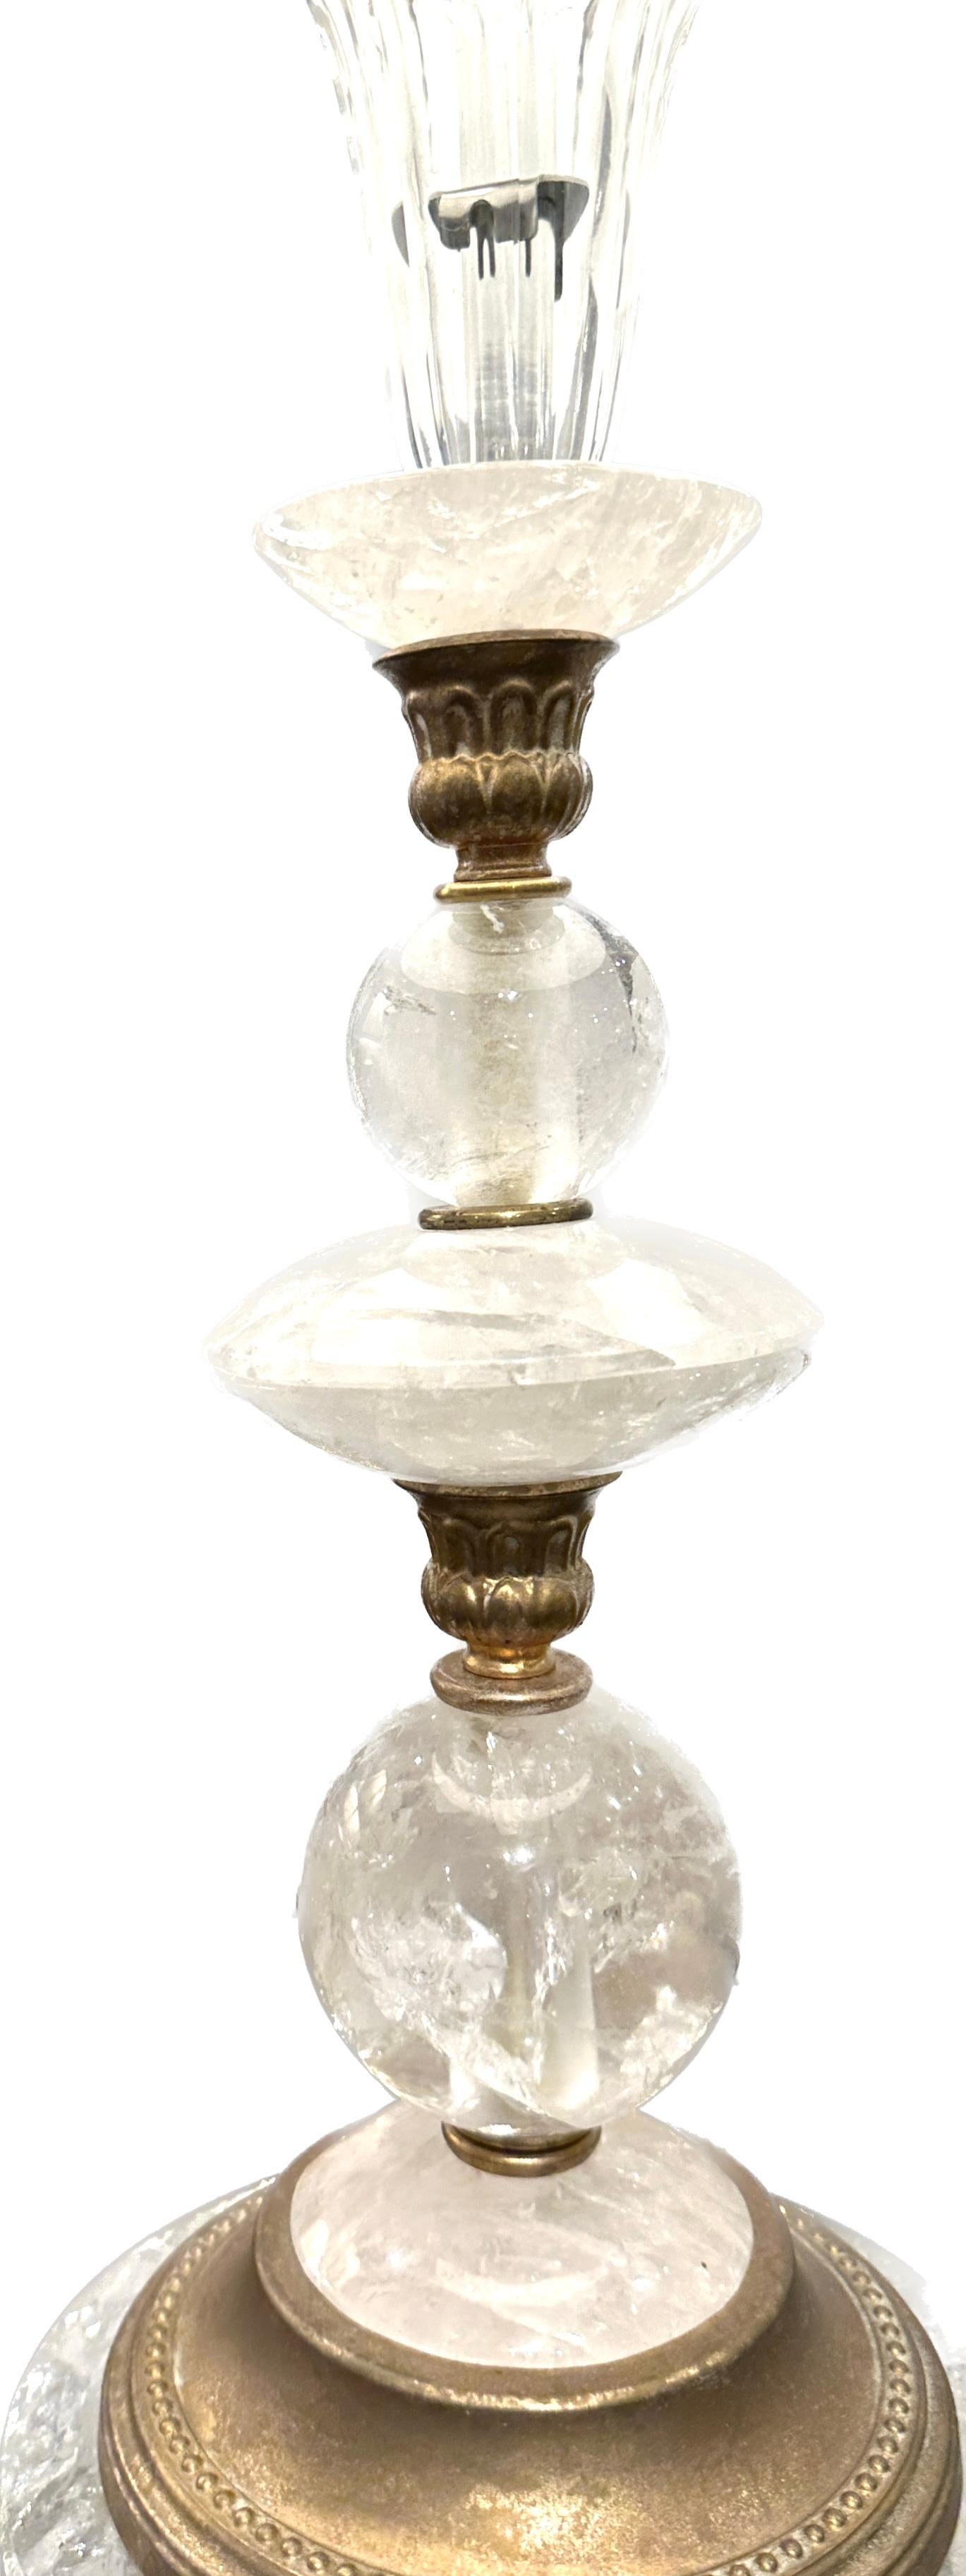 Vintage Bergkristall-Tischlampe mit rundem vergoldetem Sockel, dazwischen dekorative Zierleisten aus vergoldetem Metall.  Abgeschlossen mit Bergkristall-Finiale.
17